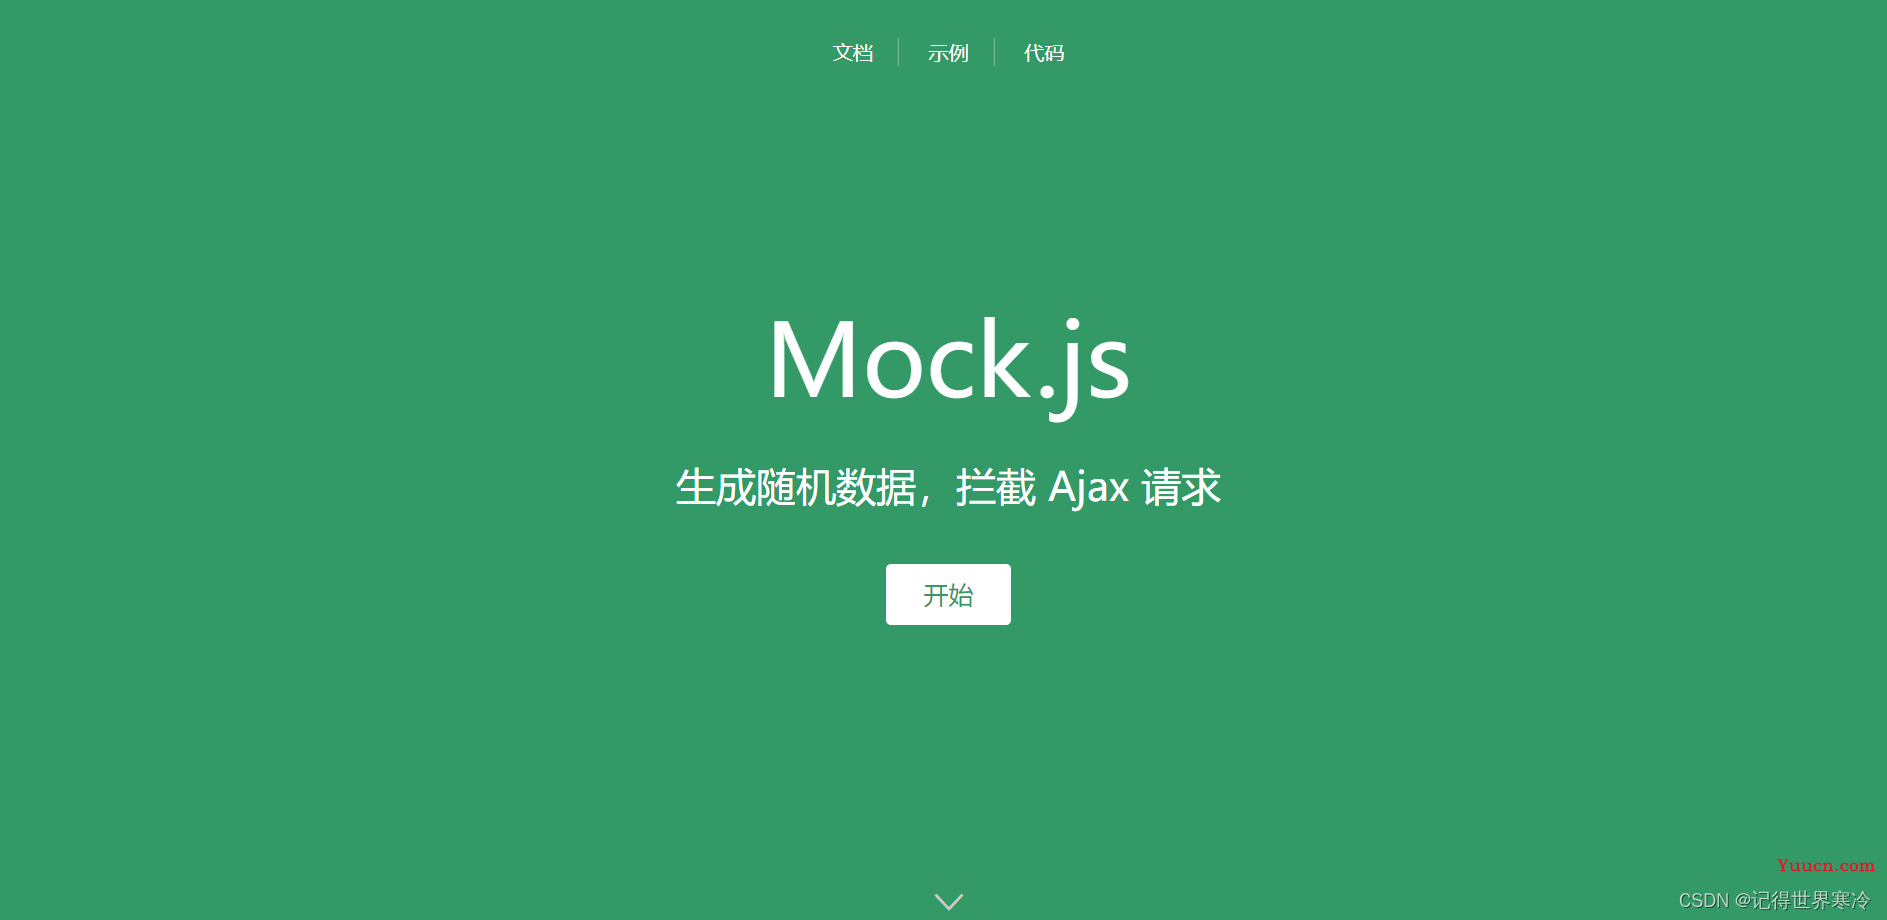 Vue3中简单使用Mock.js